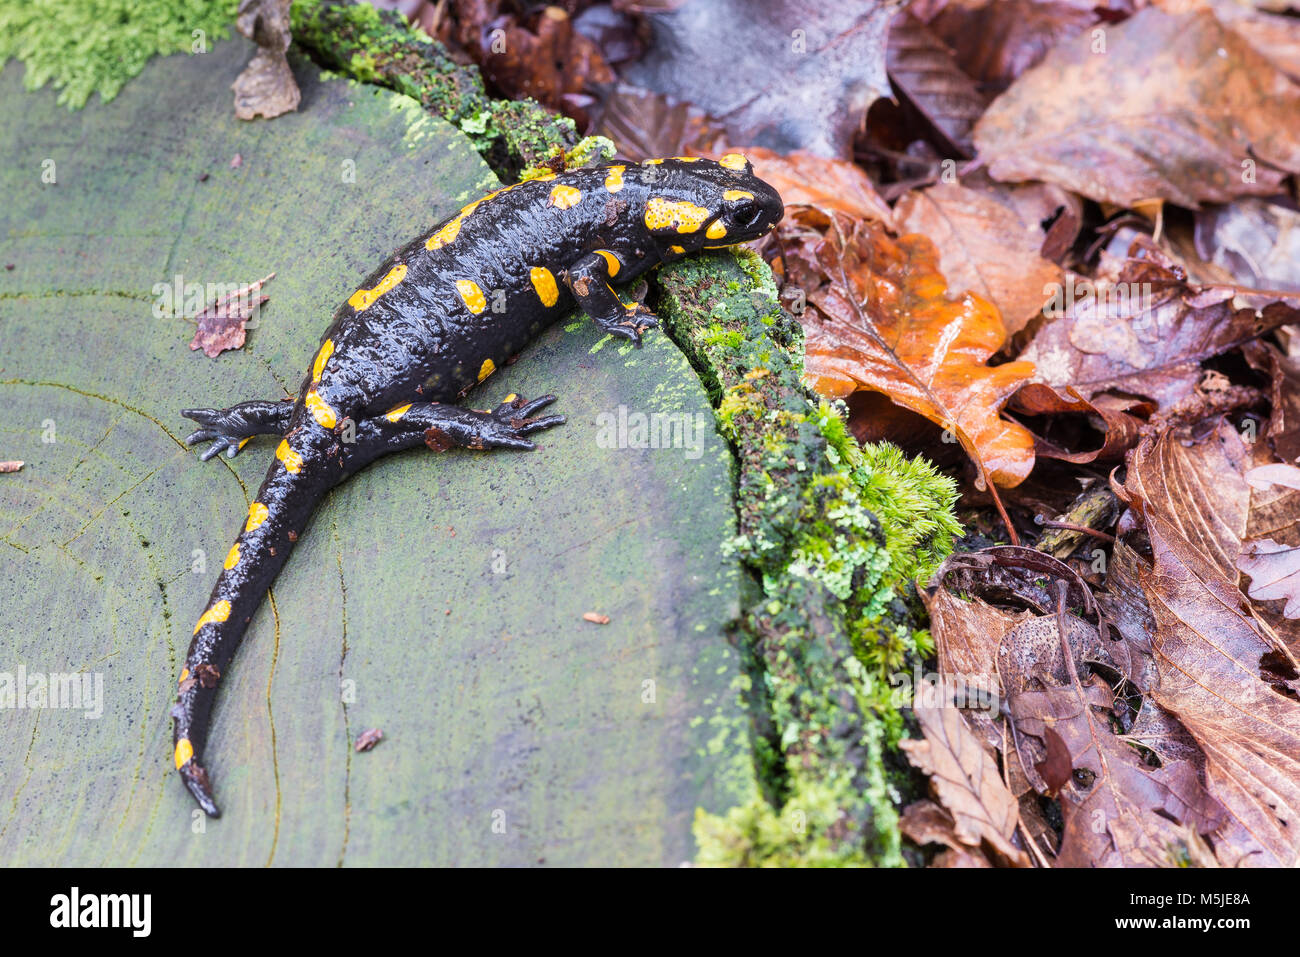 Salamandre tachetée, un amphibien tout de noir et jaune vêtu